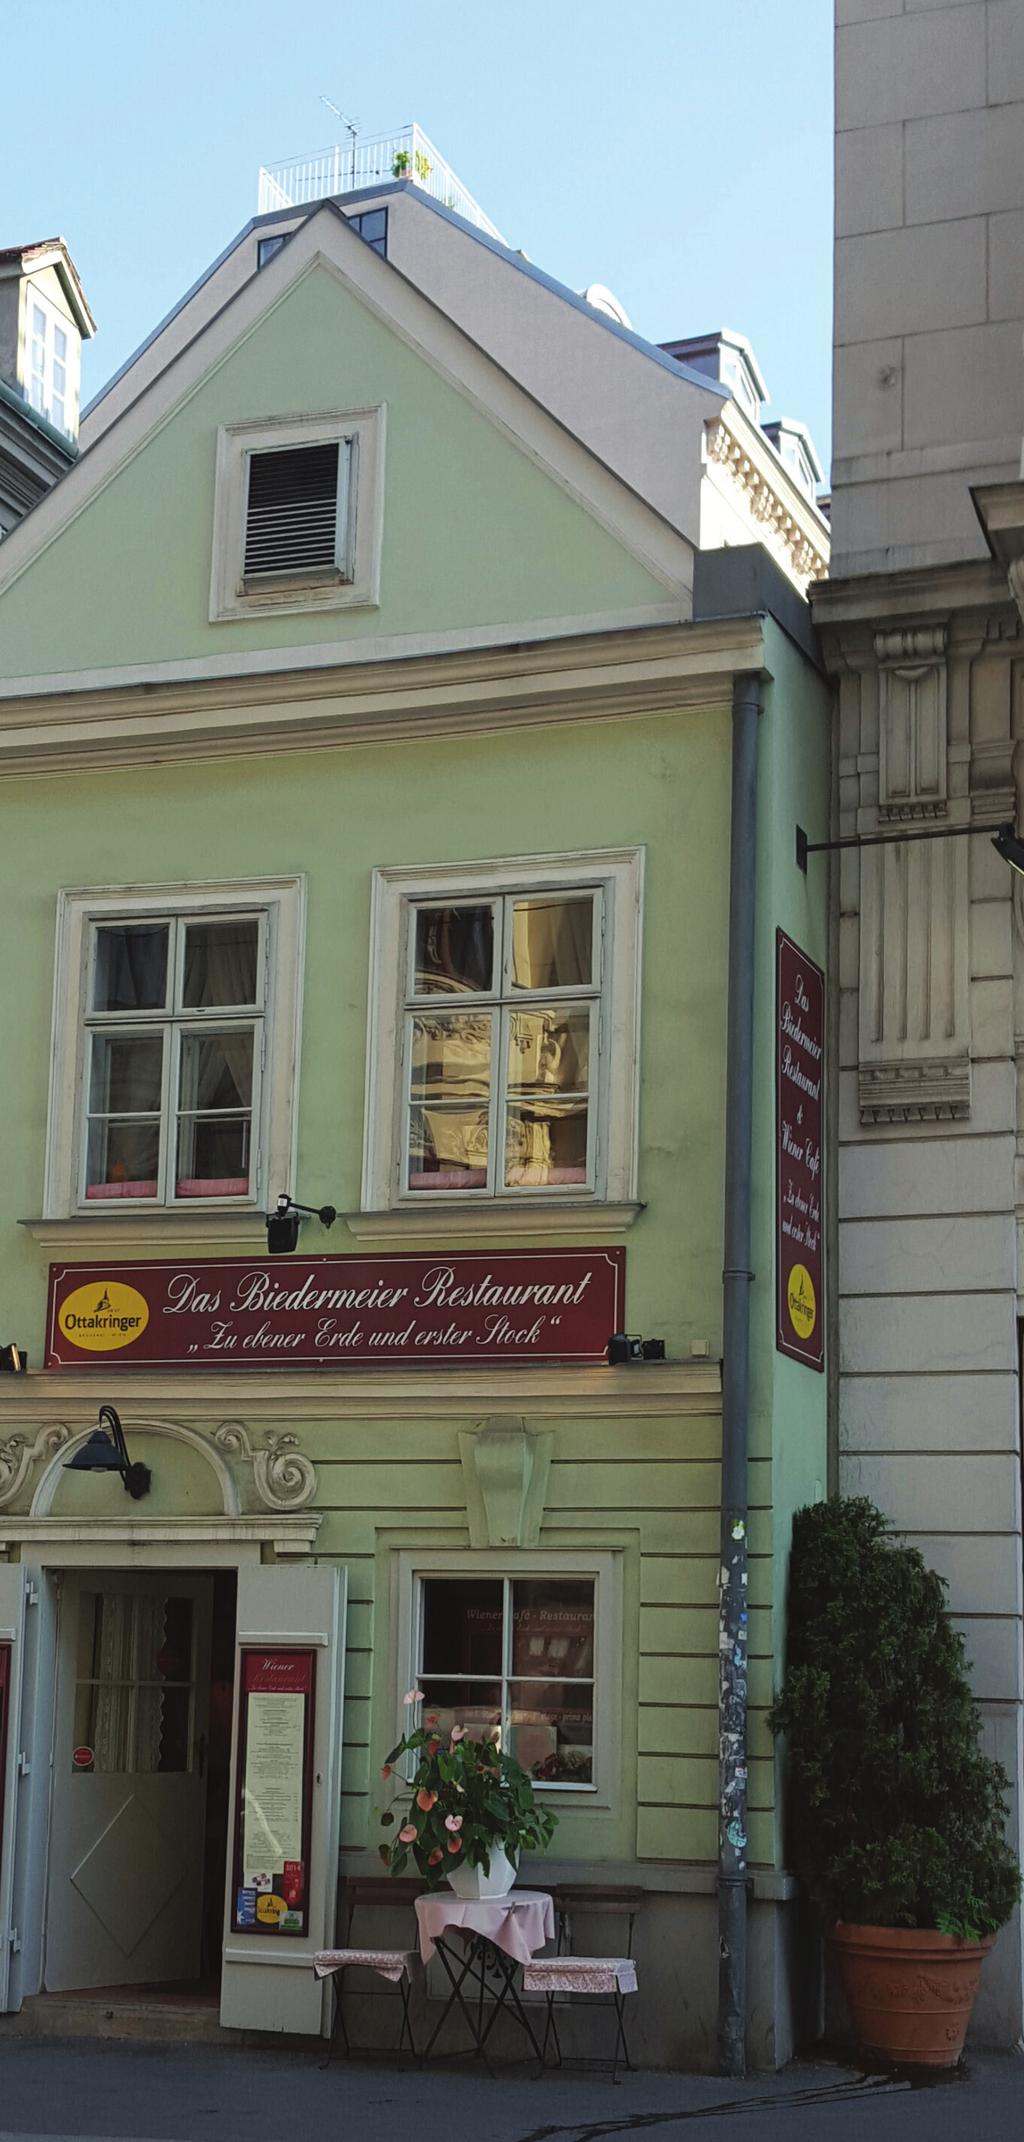 Tag der Wiener Spaziergänge Wiener Grätzln im Spiegel der Jahrhunderte Sind Sie bereit zu einer Zeitreise?